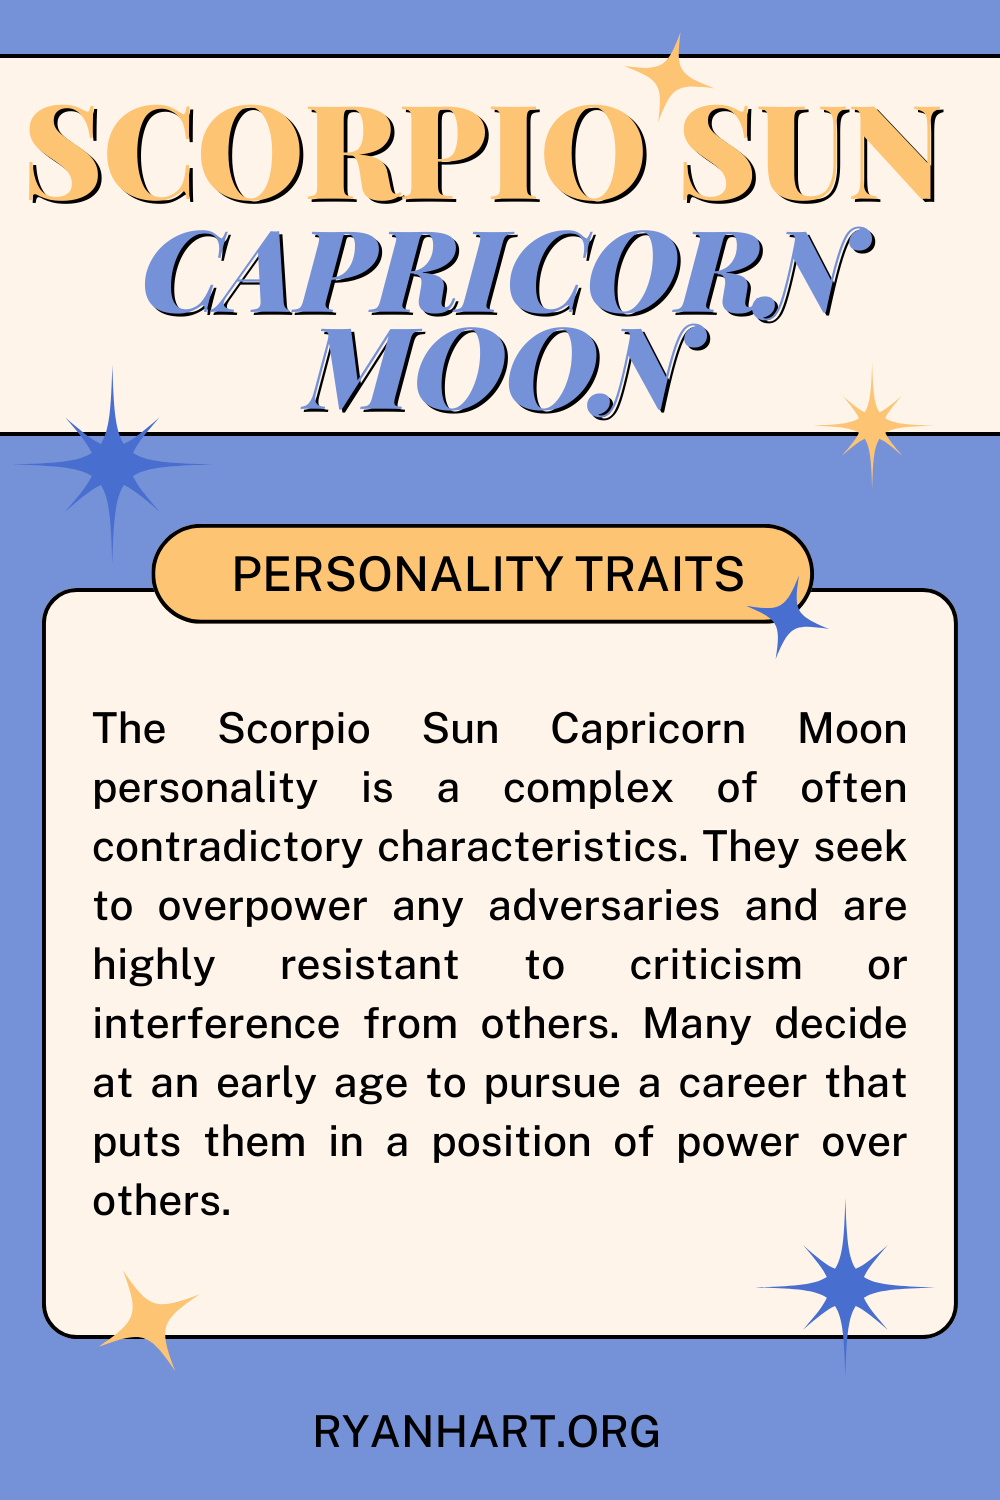 Scorpio Sun Capricorn Moon Description